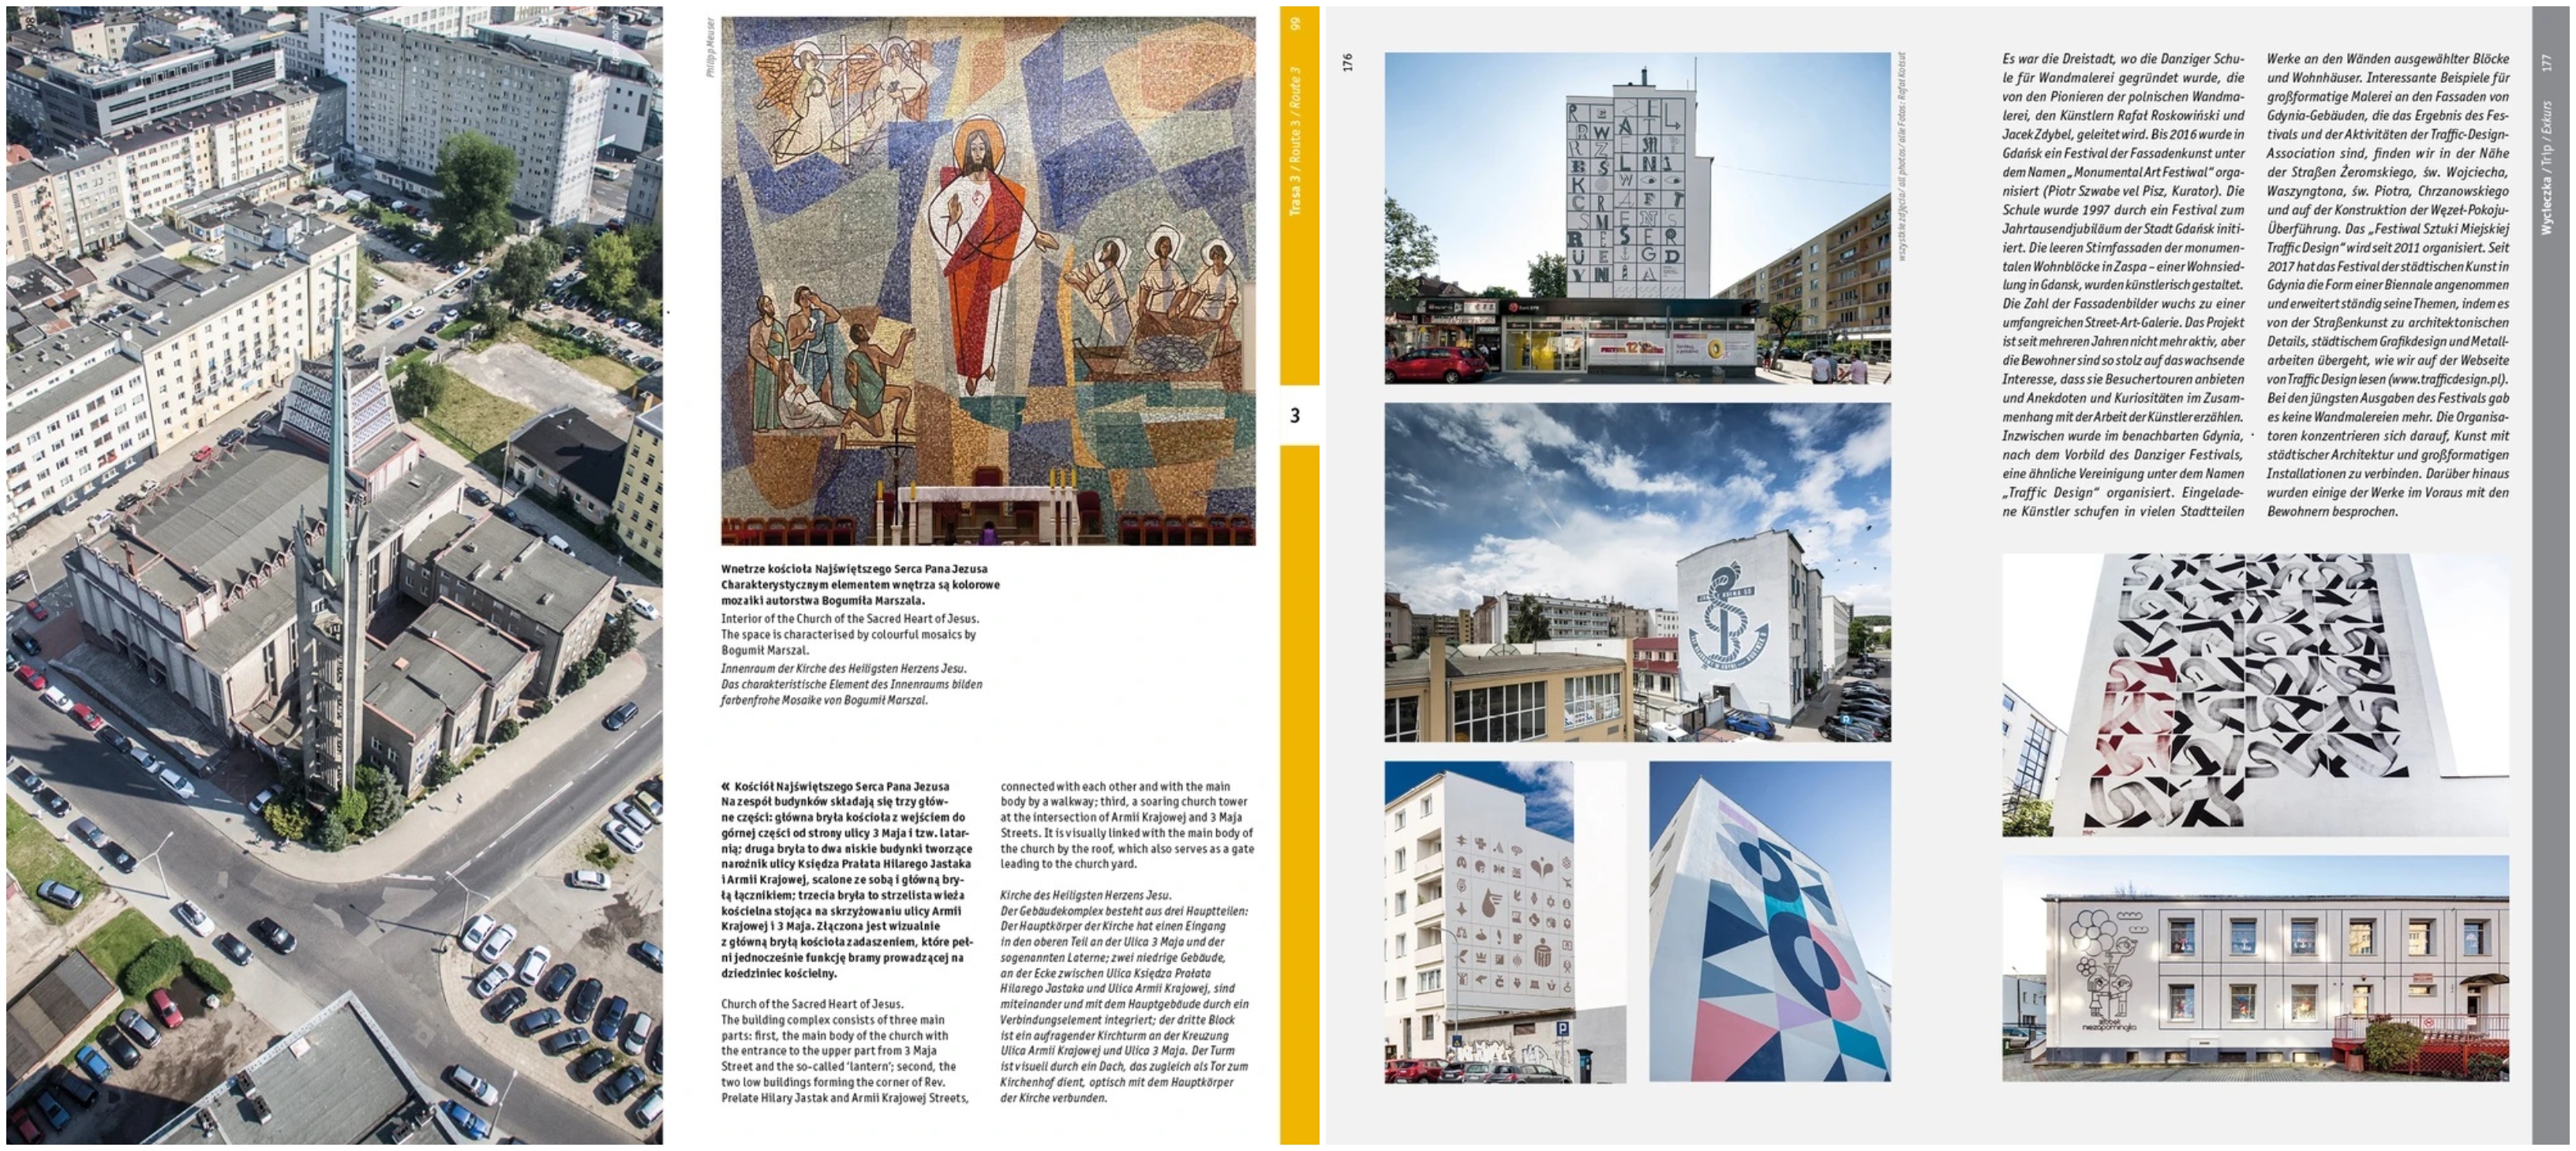 Karty z Przewodnika architektonicznego po Gdyni, źródło: dom-publishers.com